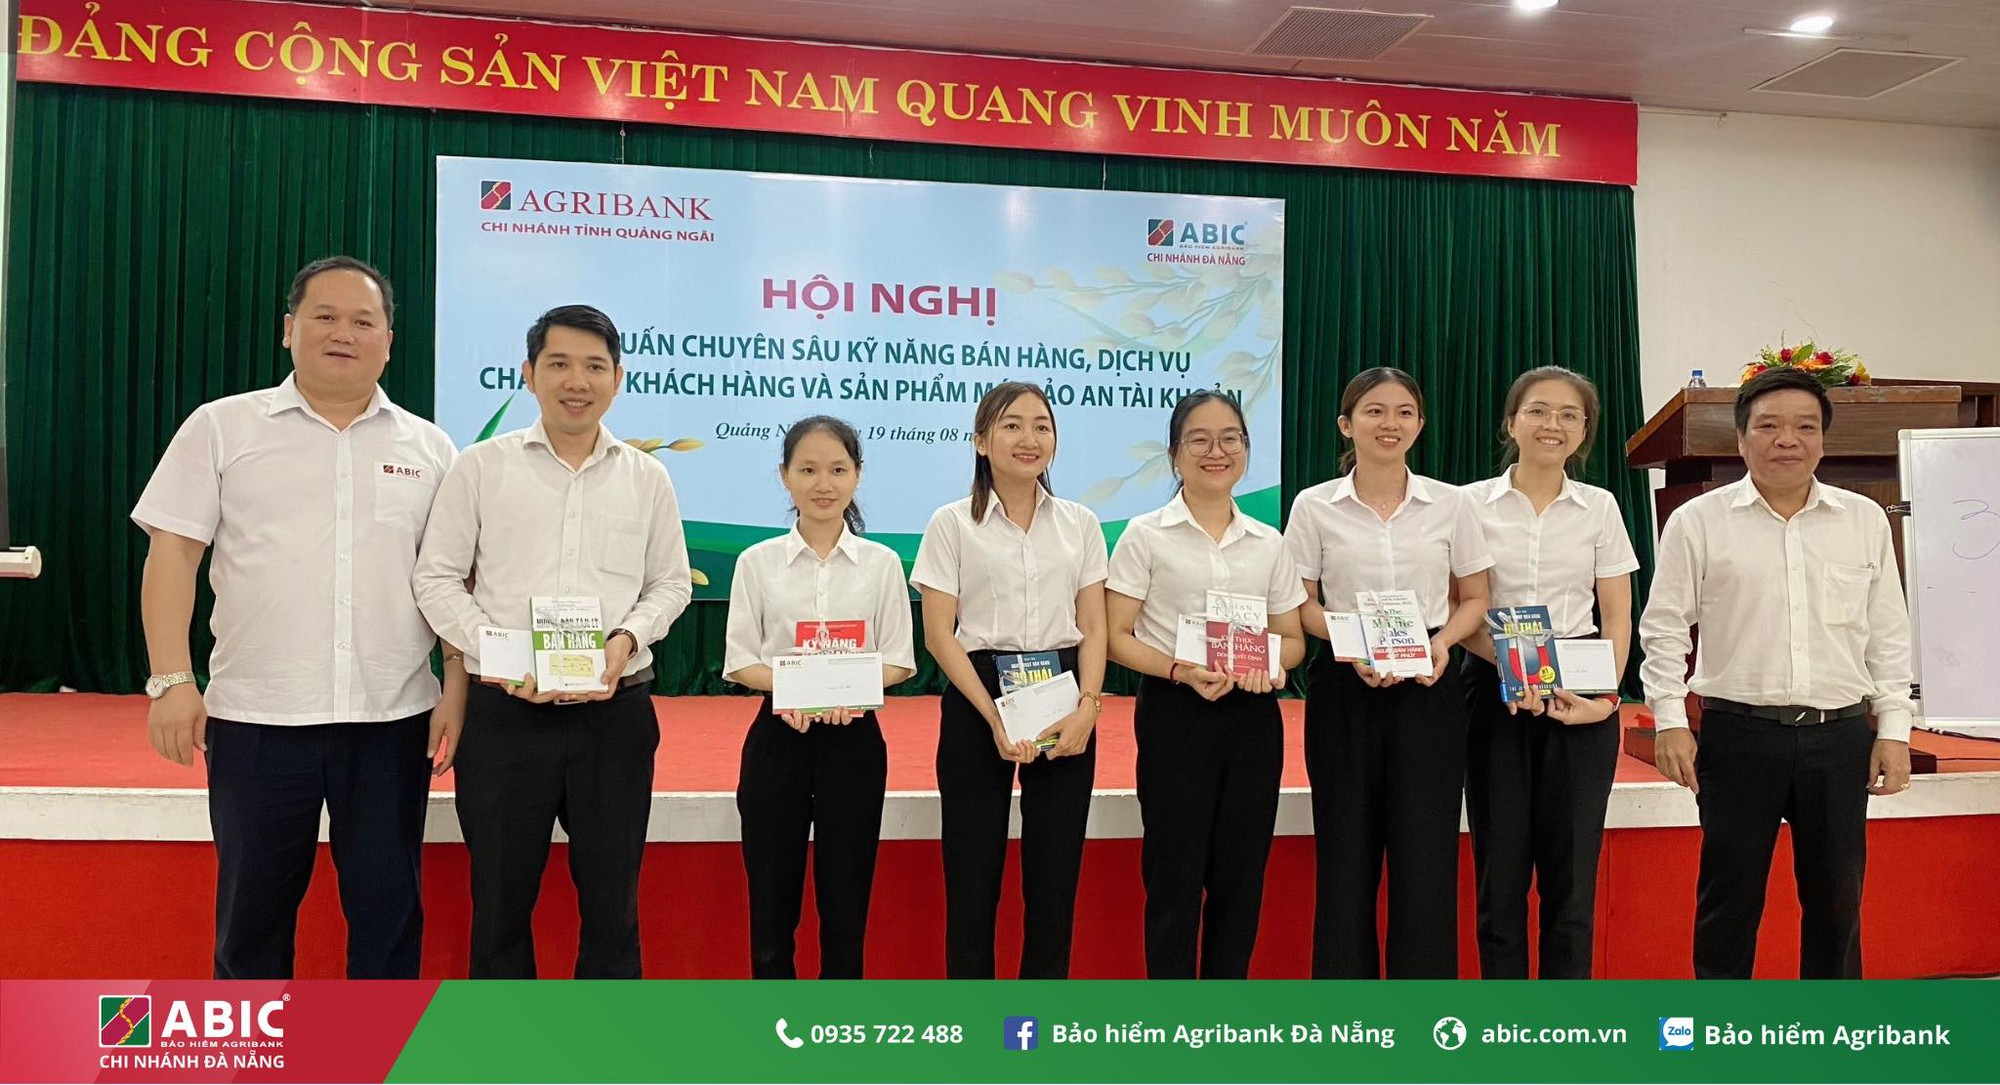 Bảo hiểm Agribank Đà Nẵng tổ chức hội nghị nâng cao kỹ năng, nghiệp vụ chăm sóc khách hàng - Ảnh 9.